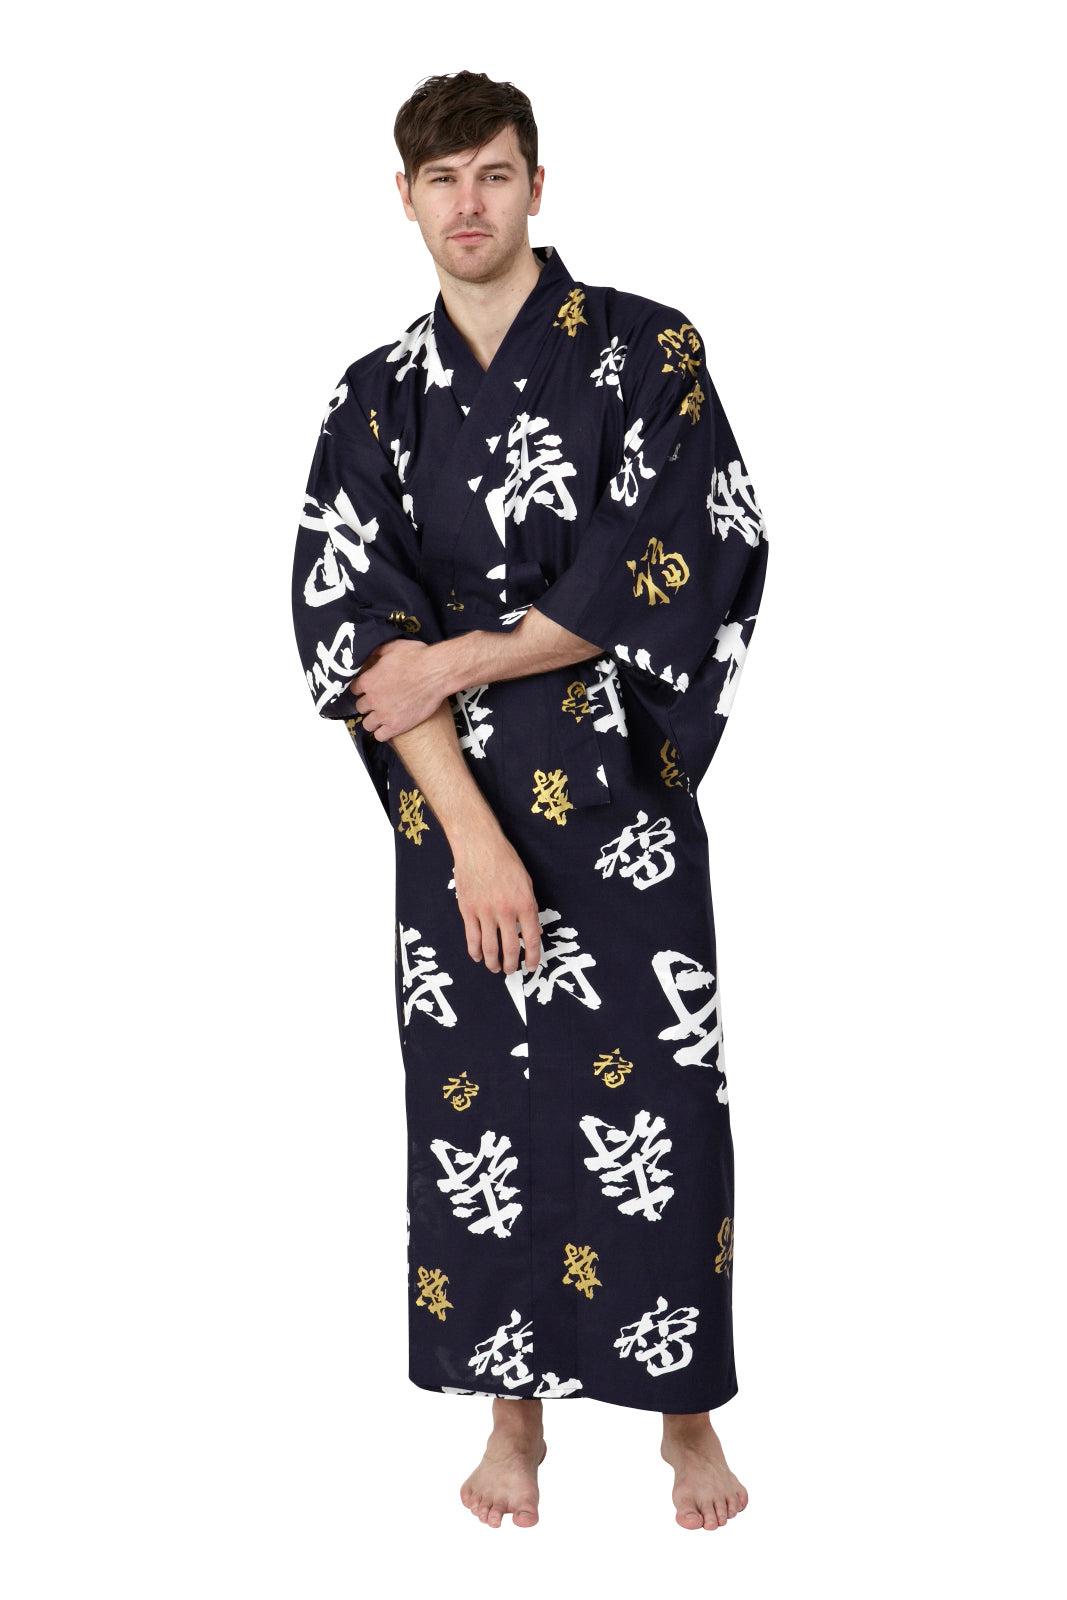 Kimono Robe for Japanese | Kimono | Yukata – Beautiful Robes